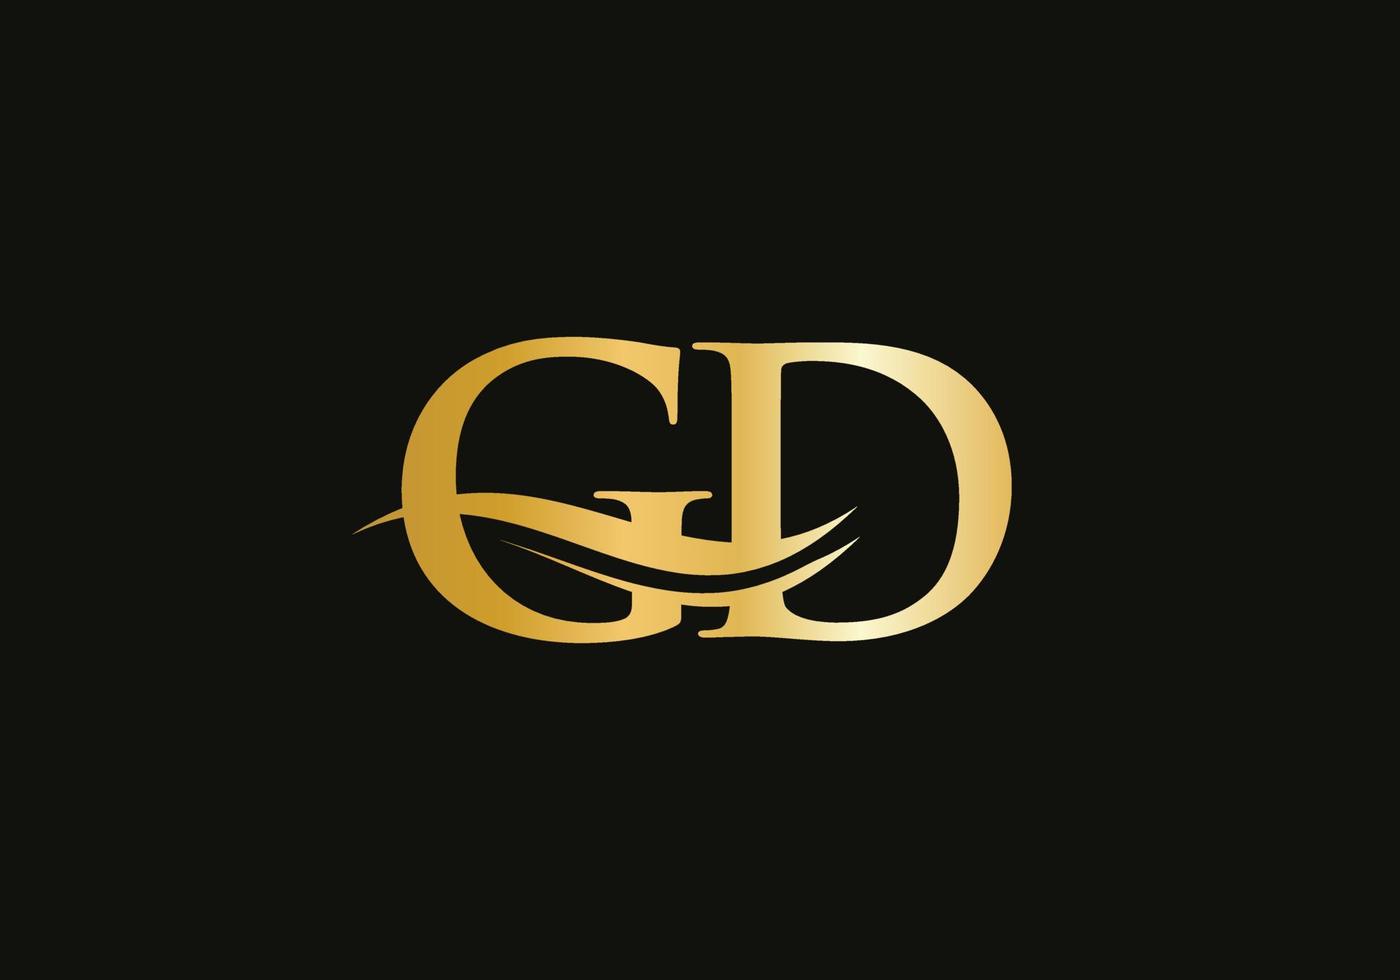 design de logotipo de carta ouro gd. design de logotipo gd com moda criativa e moderna vetor